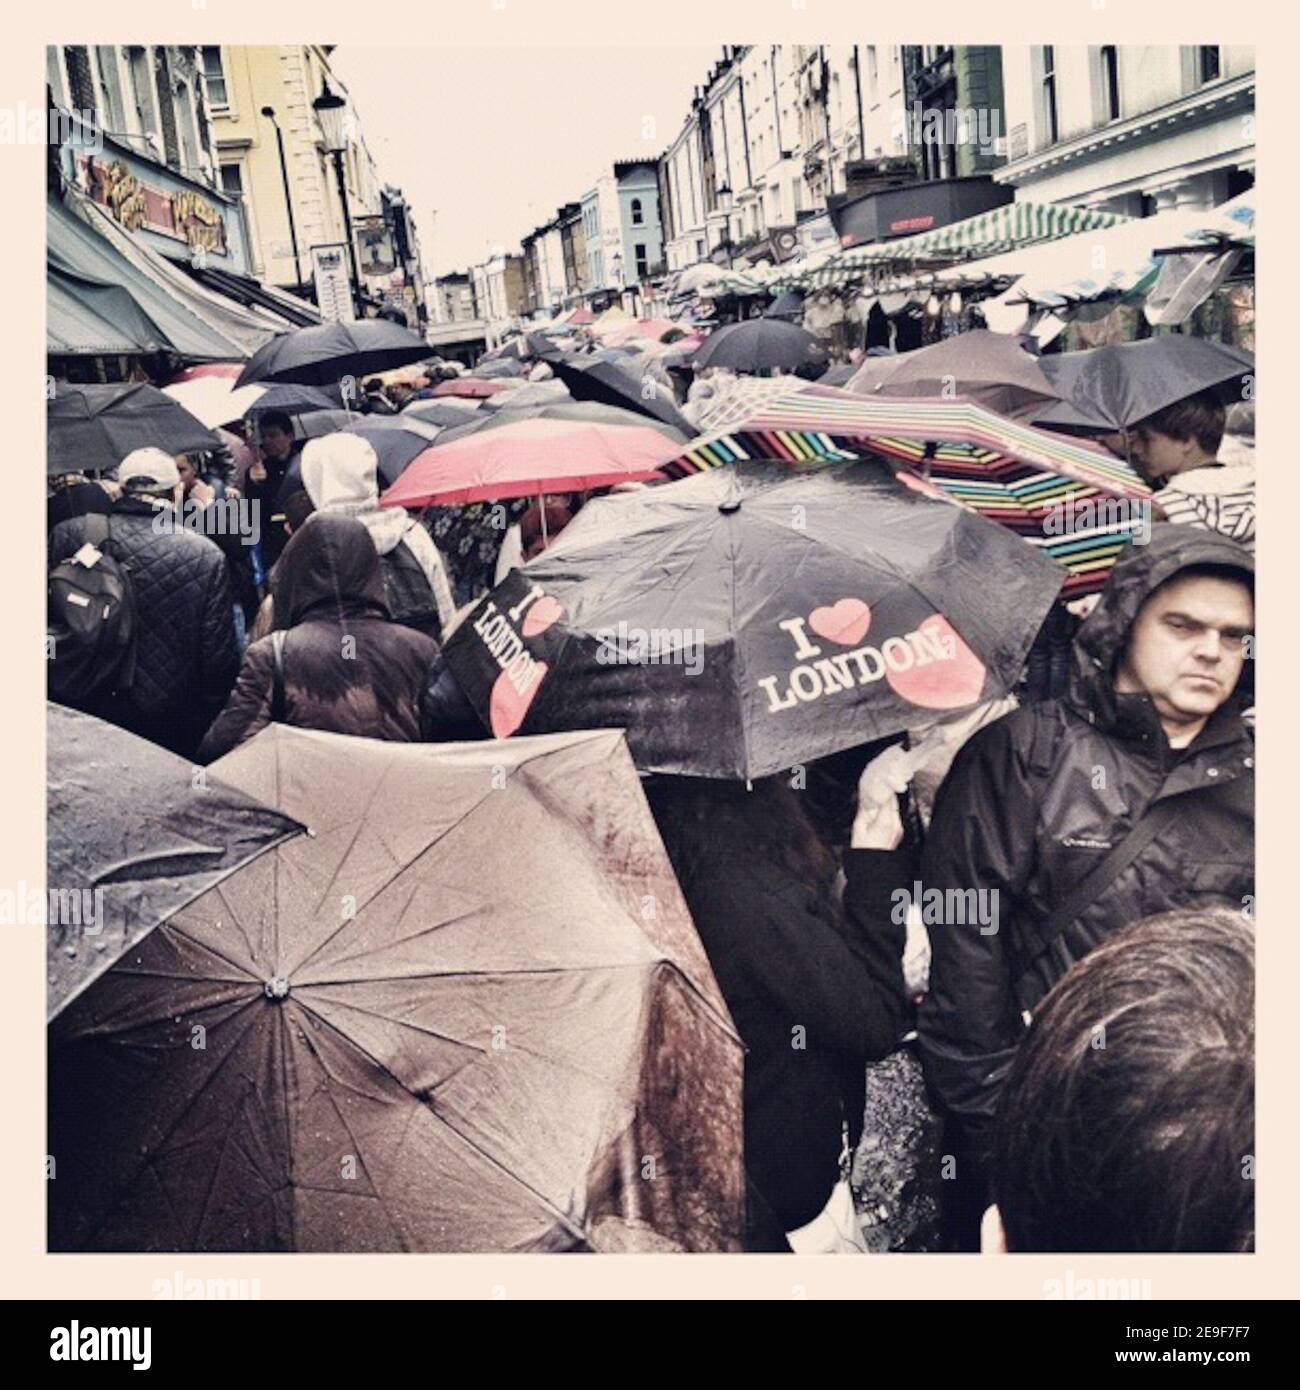 Una giornata piovosa al mercato di Portobello (parte di una serie di immagini acquisite ed elaborate su IPhone) Foto Stock